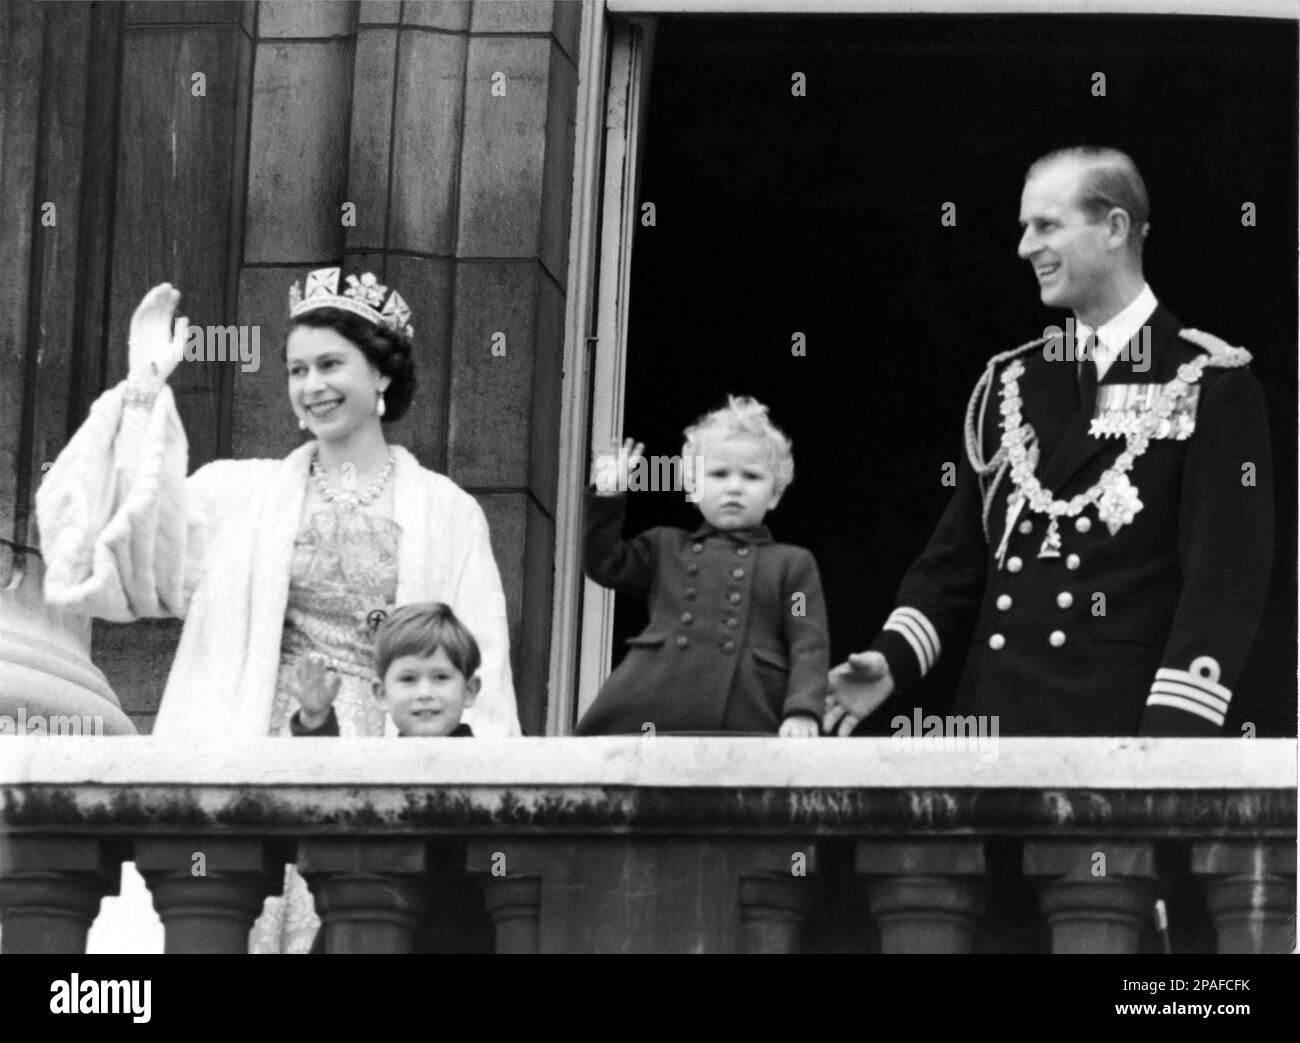 1952, 4 novembre , Buckingham Palace , Londra , Inghilterra : la c regina ELISABETTA II d'Inghilterra ( nata nel 1926 ) il giorno dell'apertura del Parlamento , dopo la cerimonia la famiglia reale sul balcone . In questa foto con il principe PHILIP Mountbatten Duca DI EDIMBURGO ( 1921 ), il principe CARLO di Galles (1948 ) e la principessa Royal ANNE ( 1950 ) - REALI - ROYALTY - nobili - Nobiltà - nobiltà - GRAND BRETAGNA - GRAN BRETAGNA - INGHILTERRA - REGINA - WINDSOR - Casa di Saxe-Coburg-Gotha - personalità celebrità personaggi celebrità quando erano bambini piccoli Foto Stock